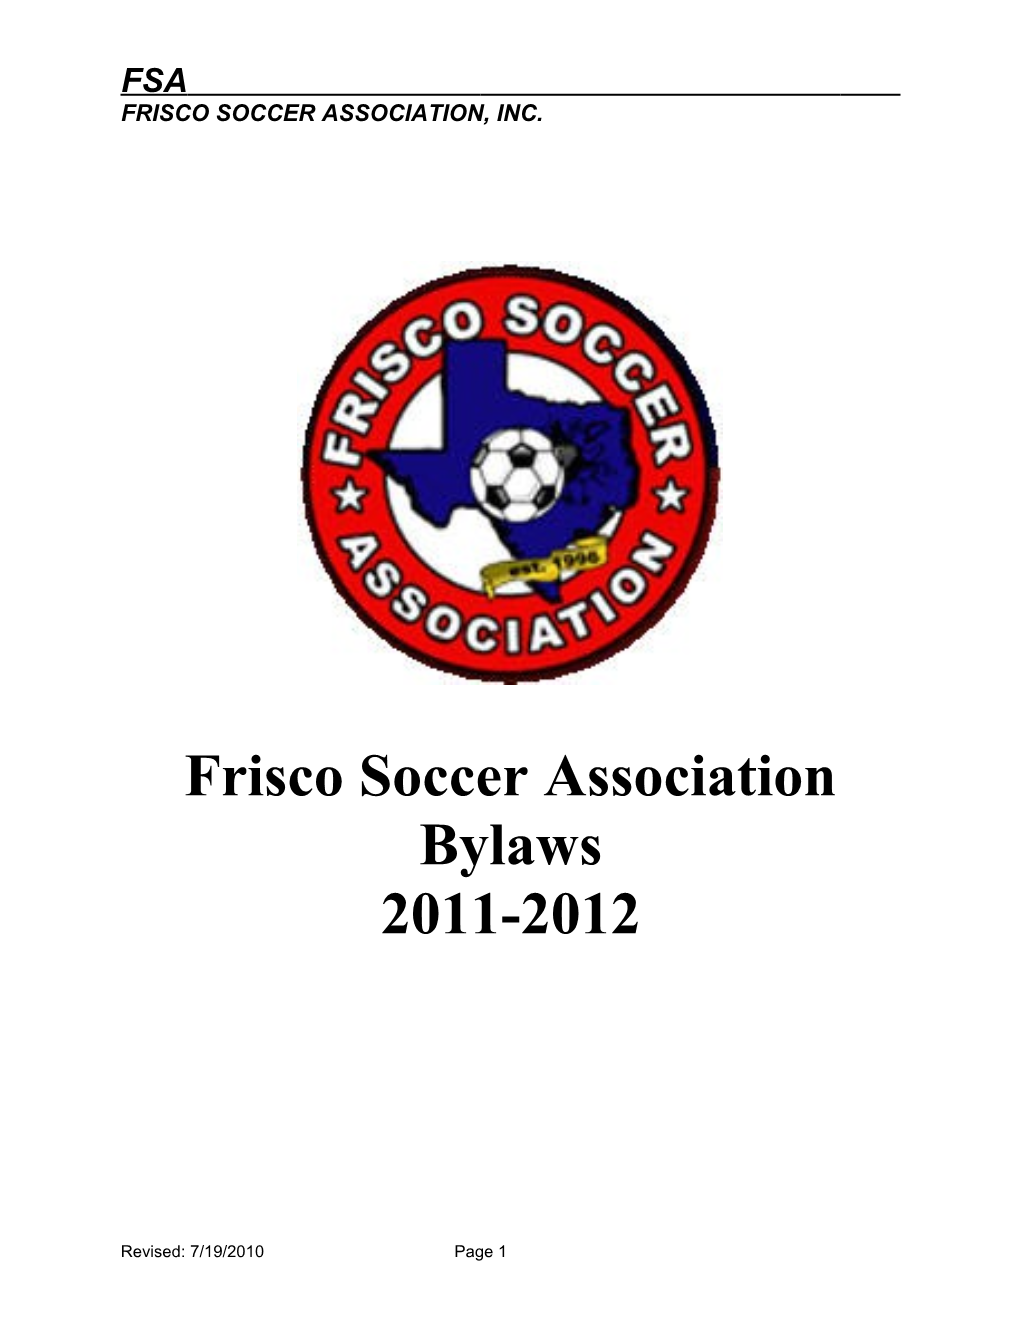 Frisco Soccer Association